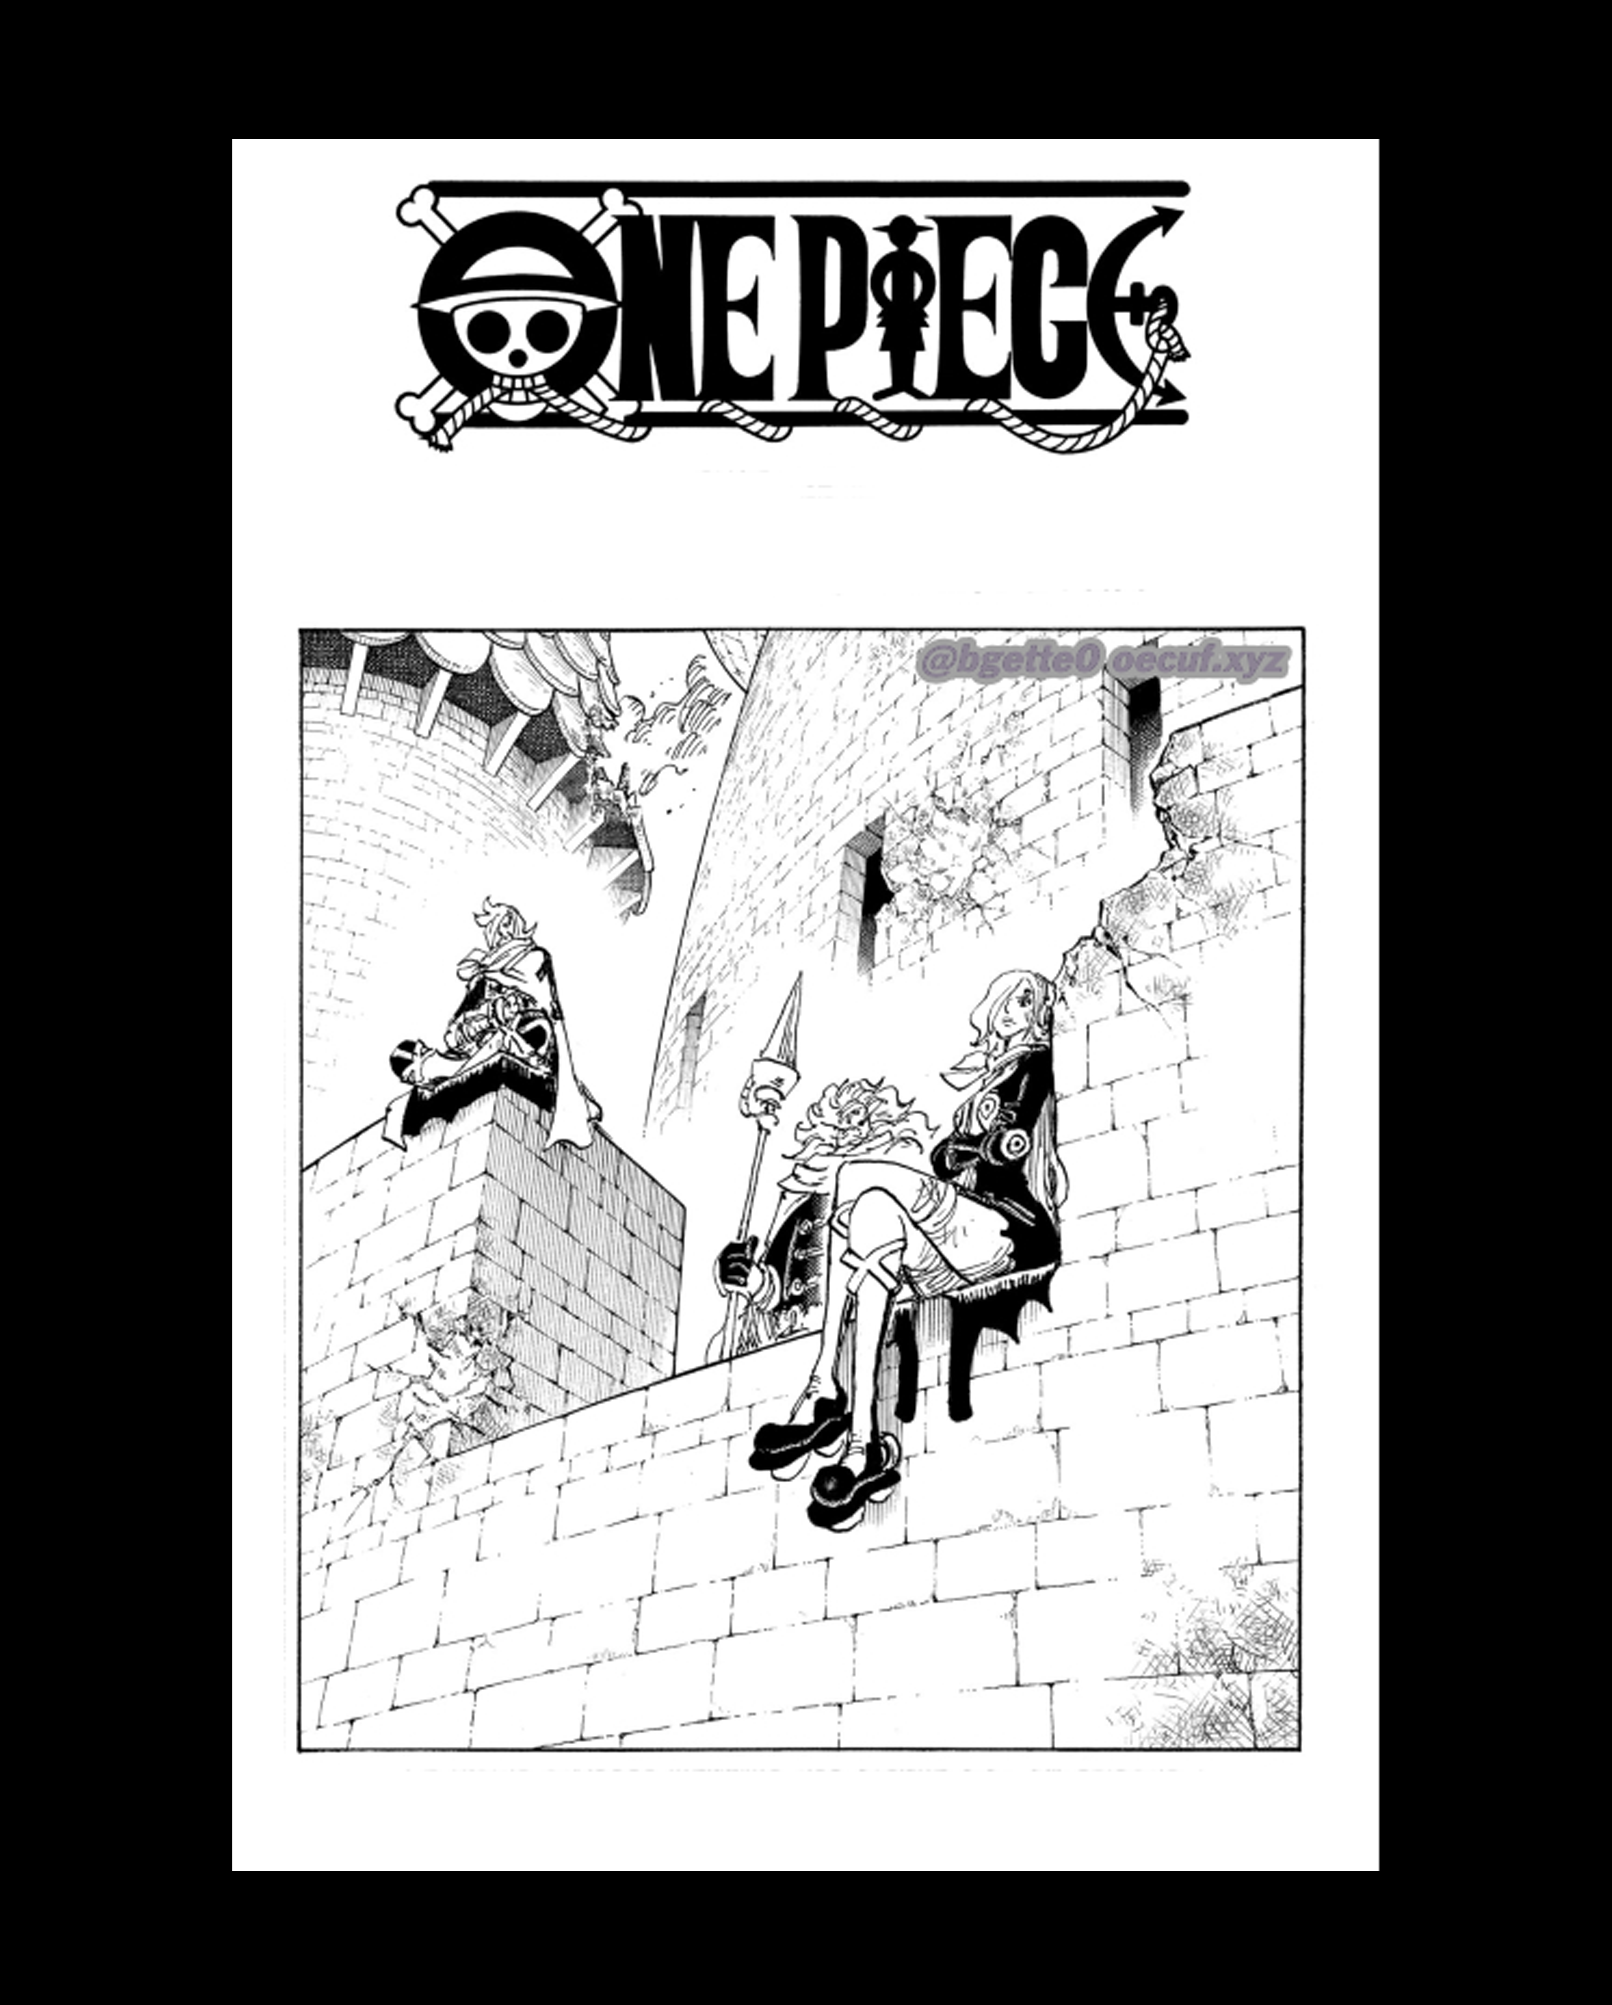 Ảnh bìa chap mới One Piece Mỗi chap mới của One Piece đều có một ảnh bìa độc đáo và thu hút. Từ quái thú, tới nhân vật, cho đến cảnh quan, mỗi ảnh bìa đều có ý nghĩa riêng. Nếu bạn là fan của One Piece, đừng bỏ lỡ ảnh bìa chap mới này. Hãy thưởng thức và cùng đi tìm hiểu khả năng tương tác giữa ảnh bìa chap mới và cốt truyện của One Piece.